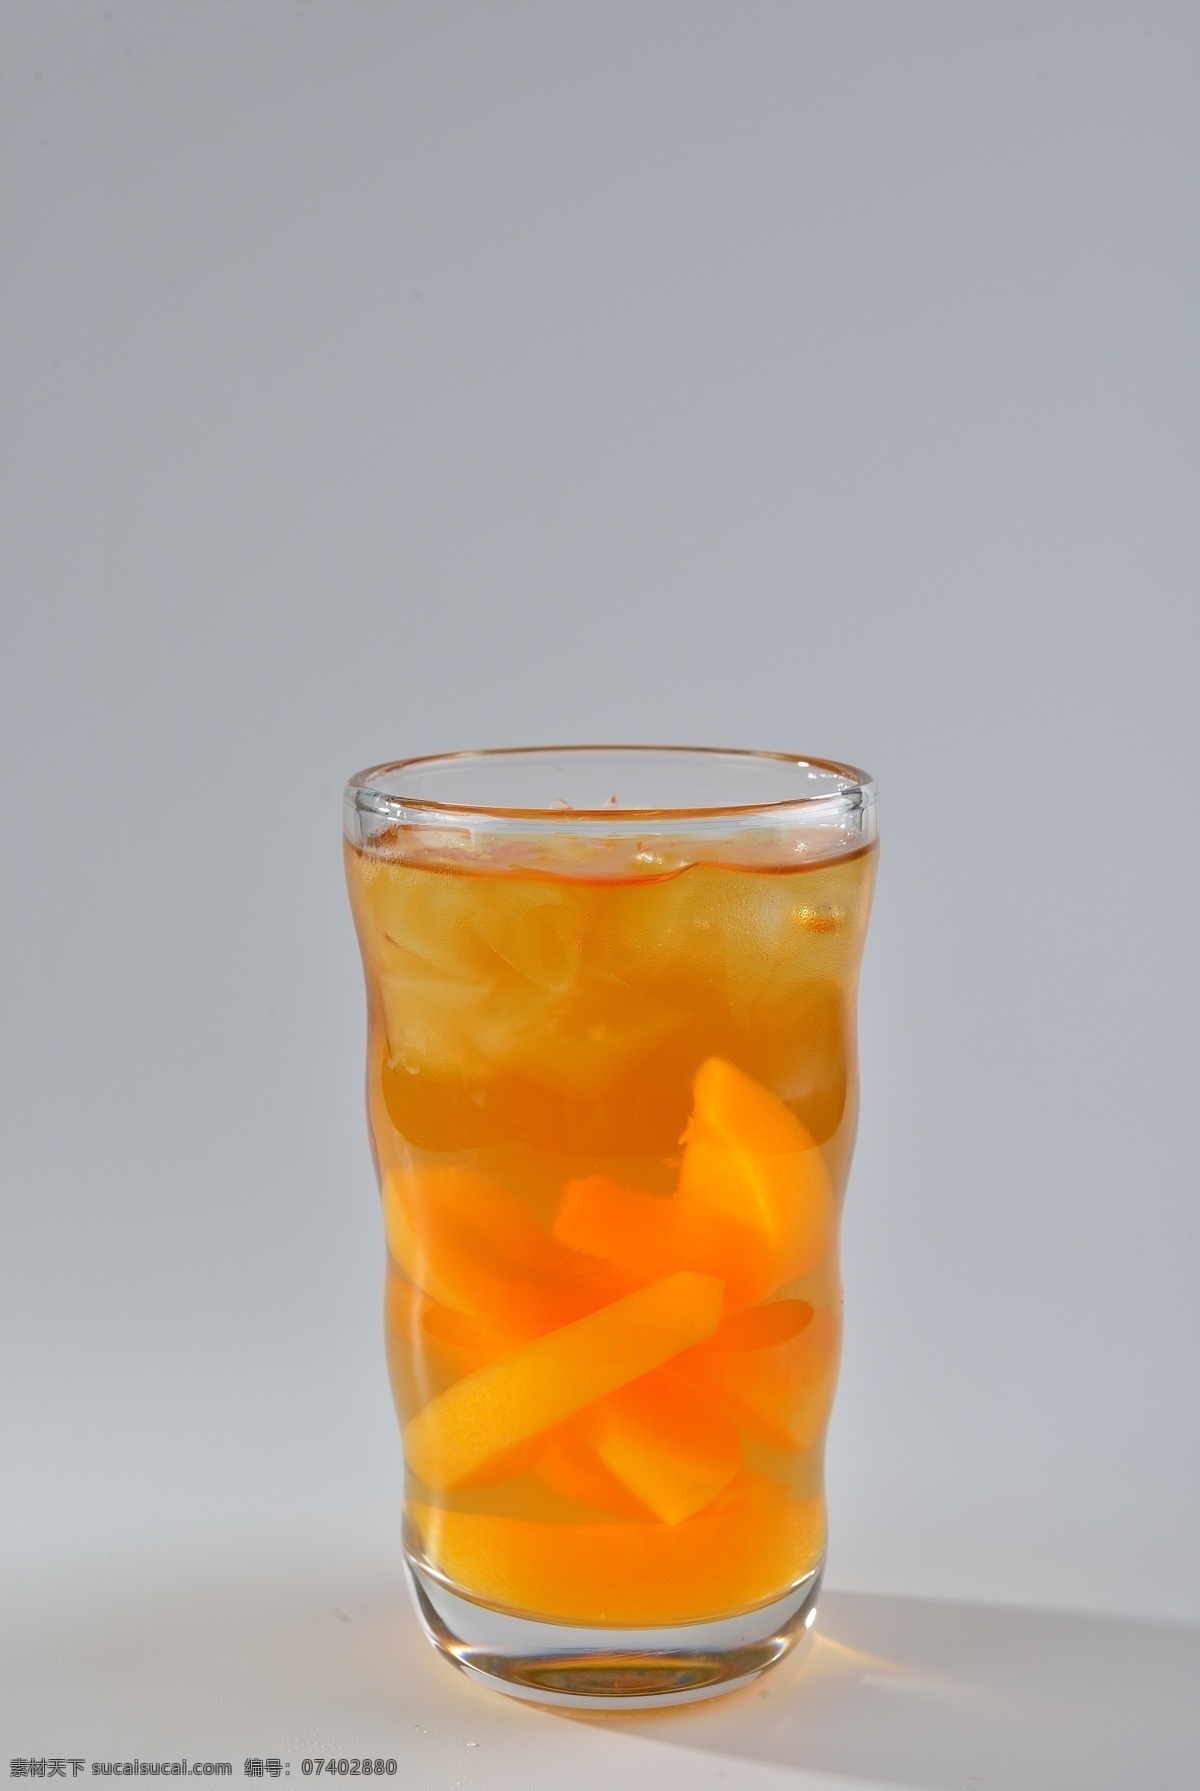 装 玻璃杯 里 黄桃 蜂蜜 茶 维生素 维c 酸 甜 养颜 美容 冷饮 饮品 冰饮 餐饮美食 饮料酒水